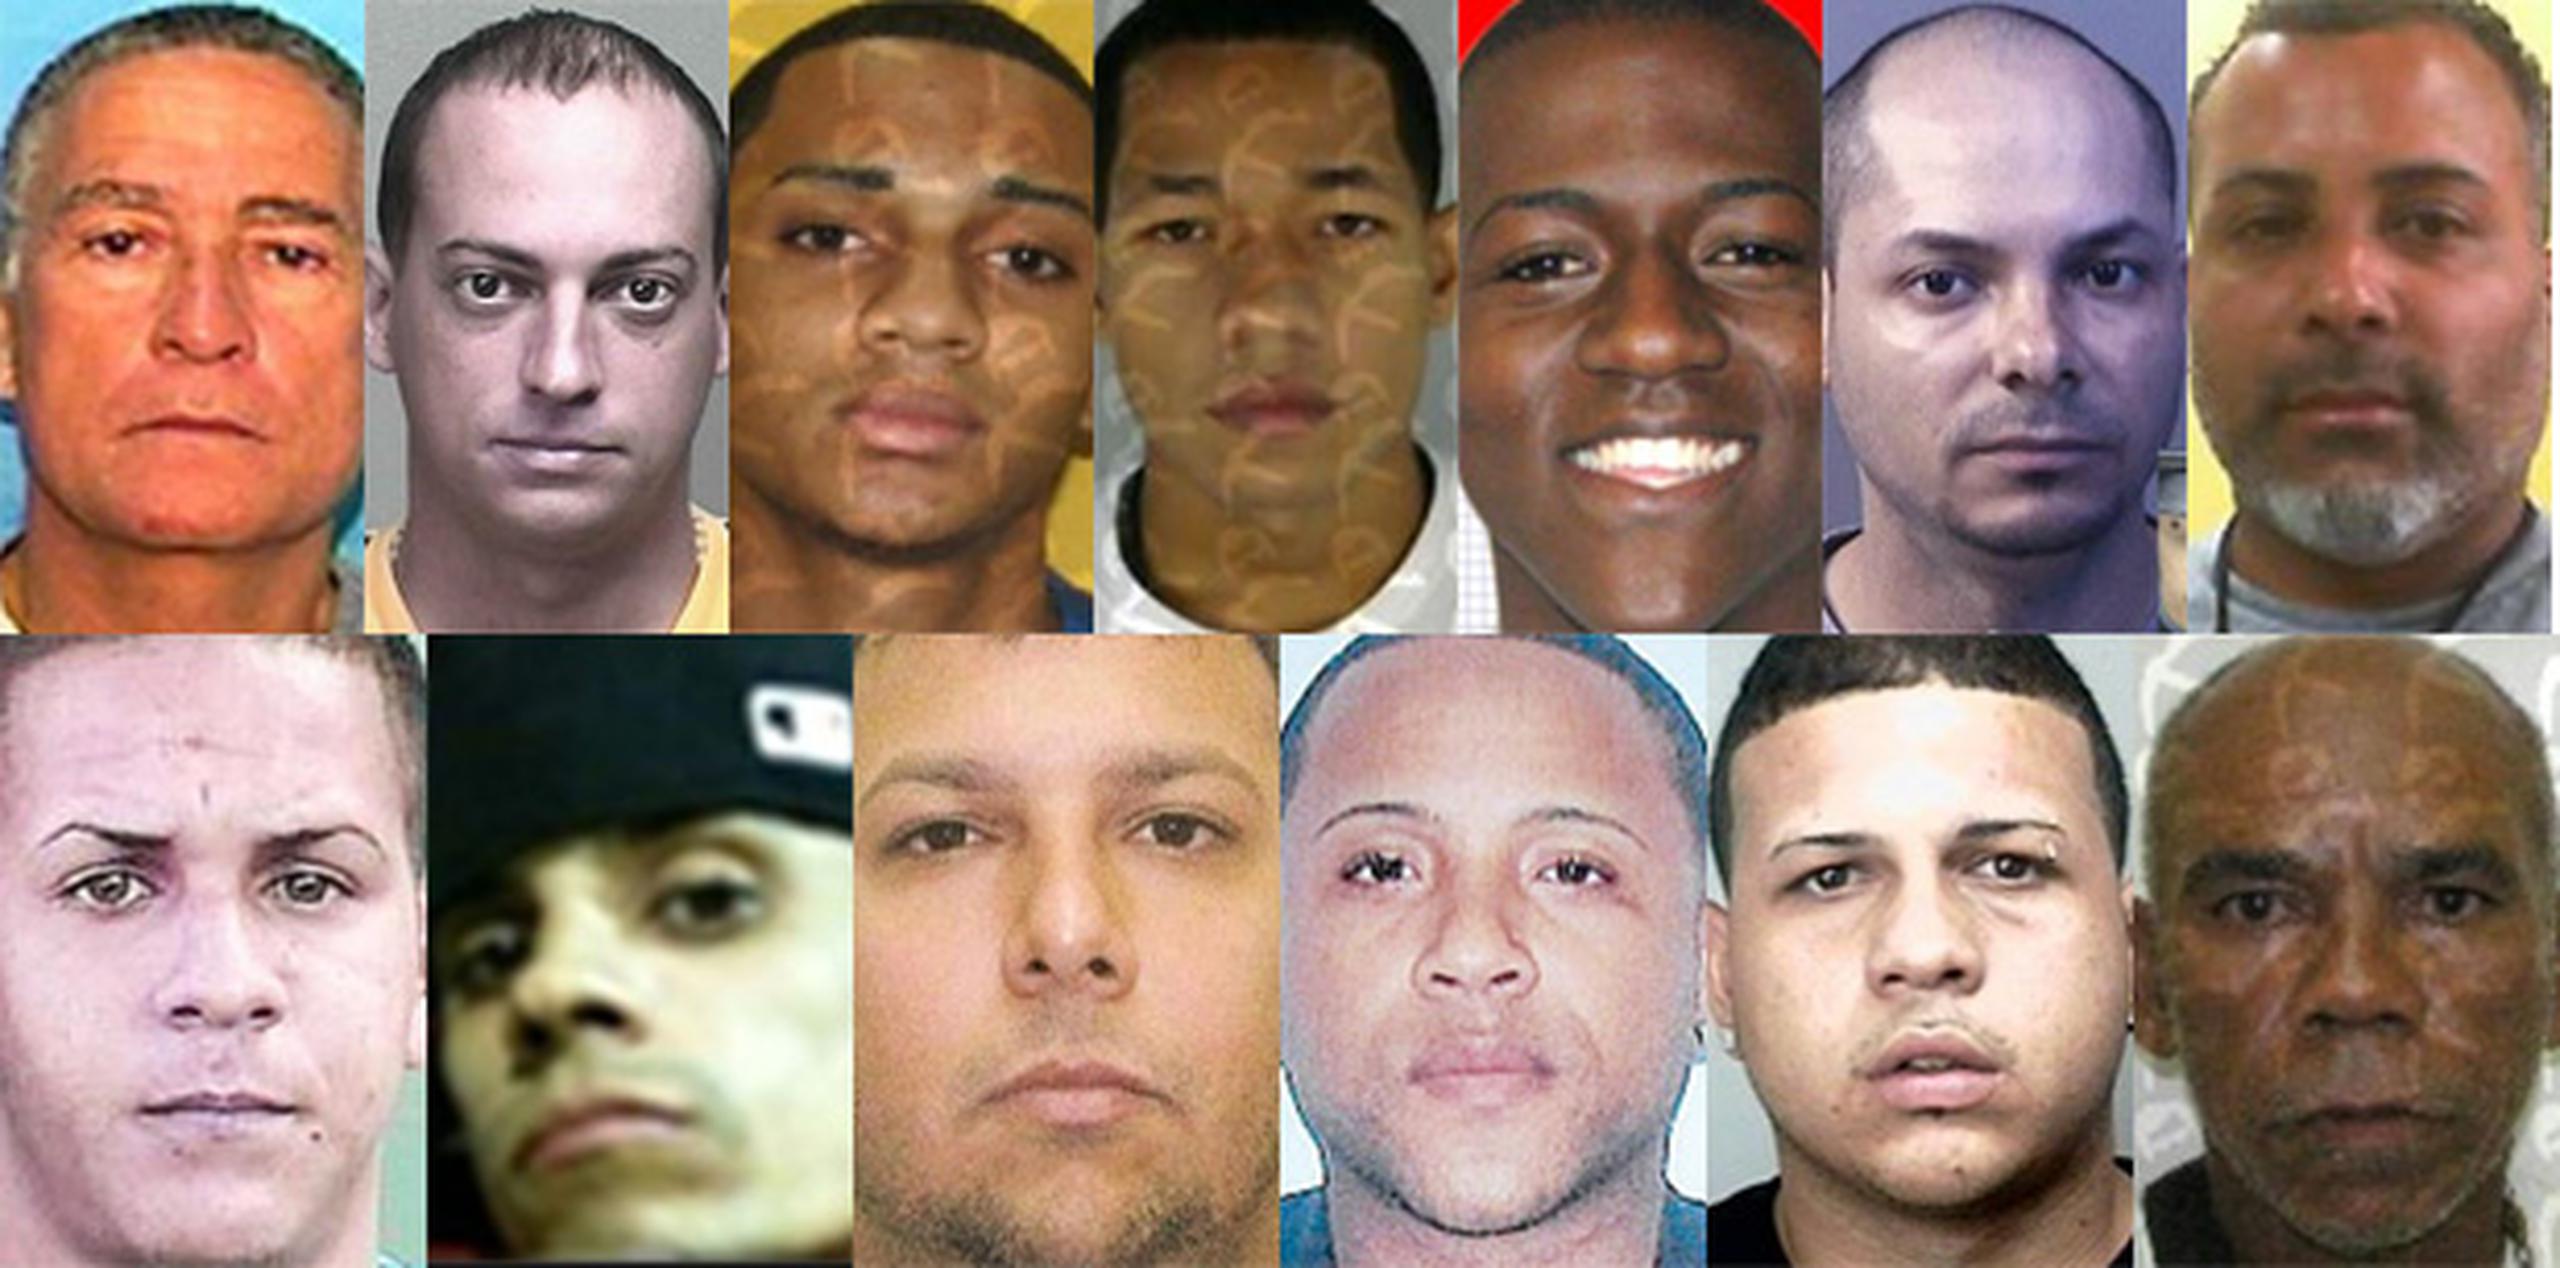 Si usted tiene información que pueda contribuir a la captura de algunos de estos fugitivos puede llamar anónimamente al 787-343-2020, o contactar por internet al www.3432020.com. (Archivo)